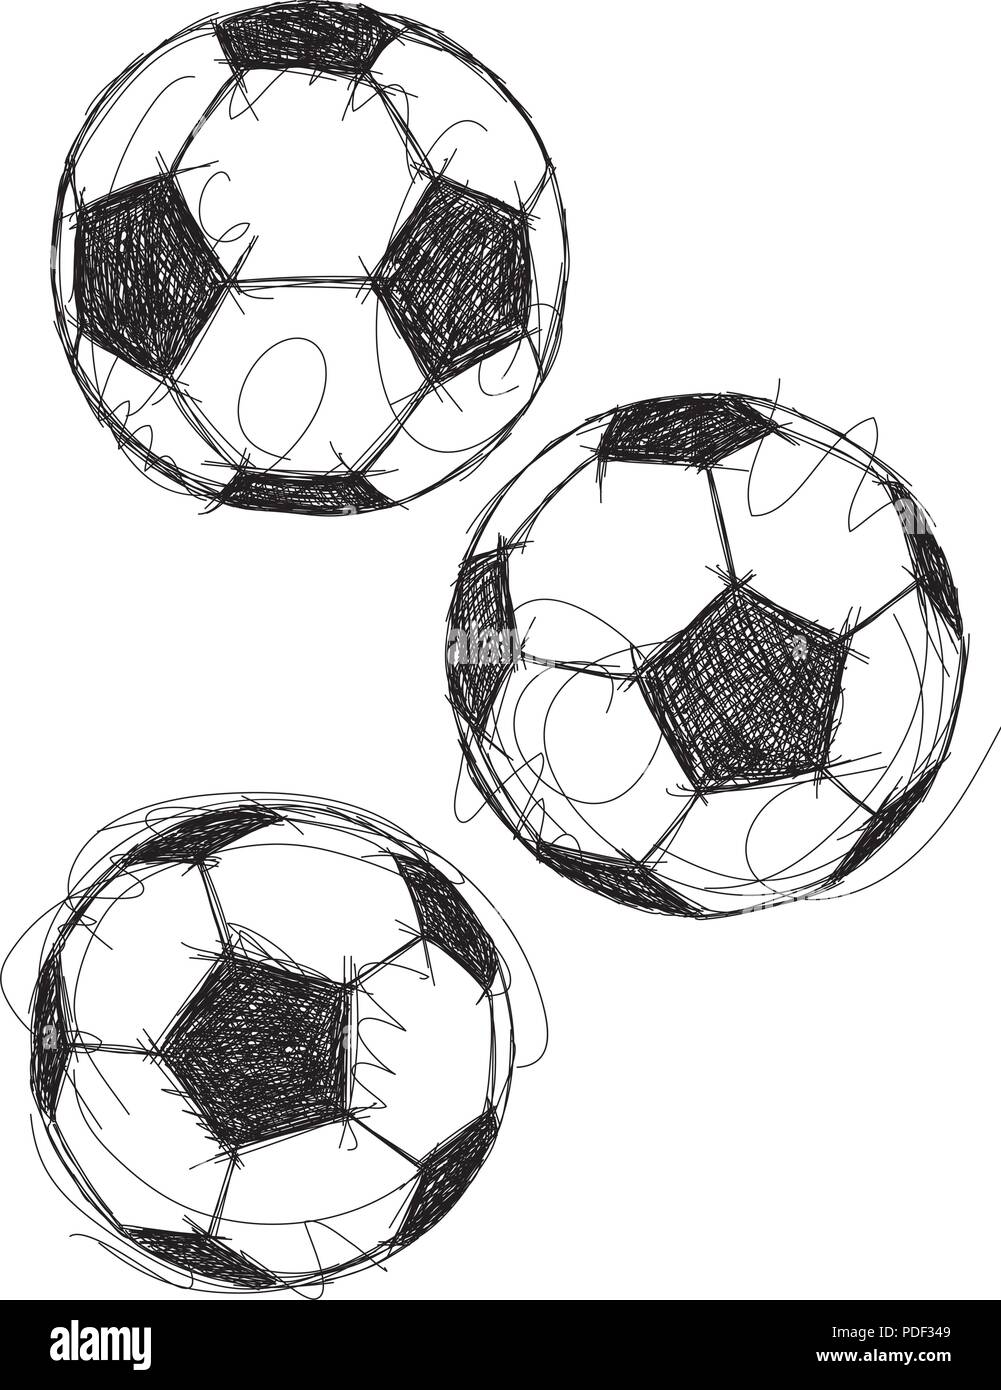 Fußball Skizzen Sketchy, Hand gezeichnet Fußbälle oder Fußbälle. Stock Vektor